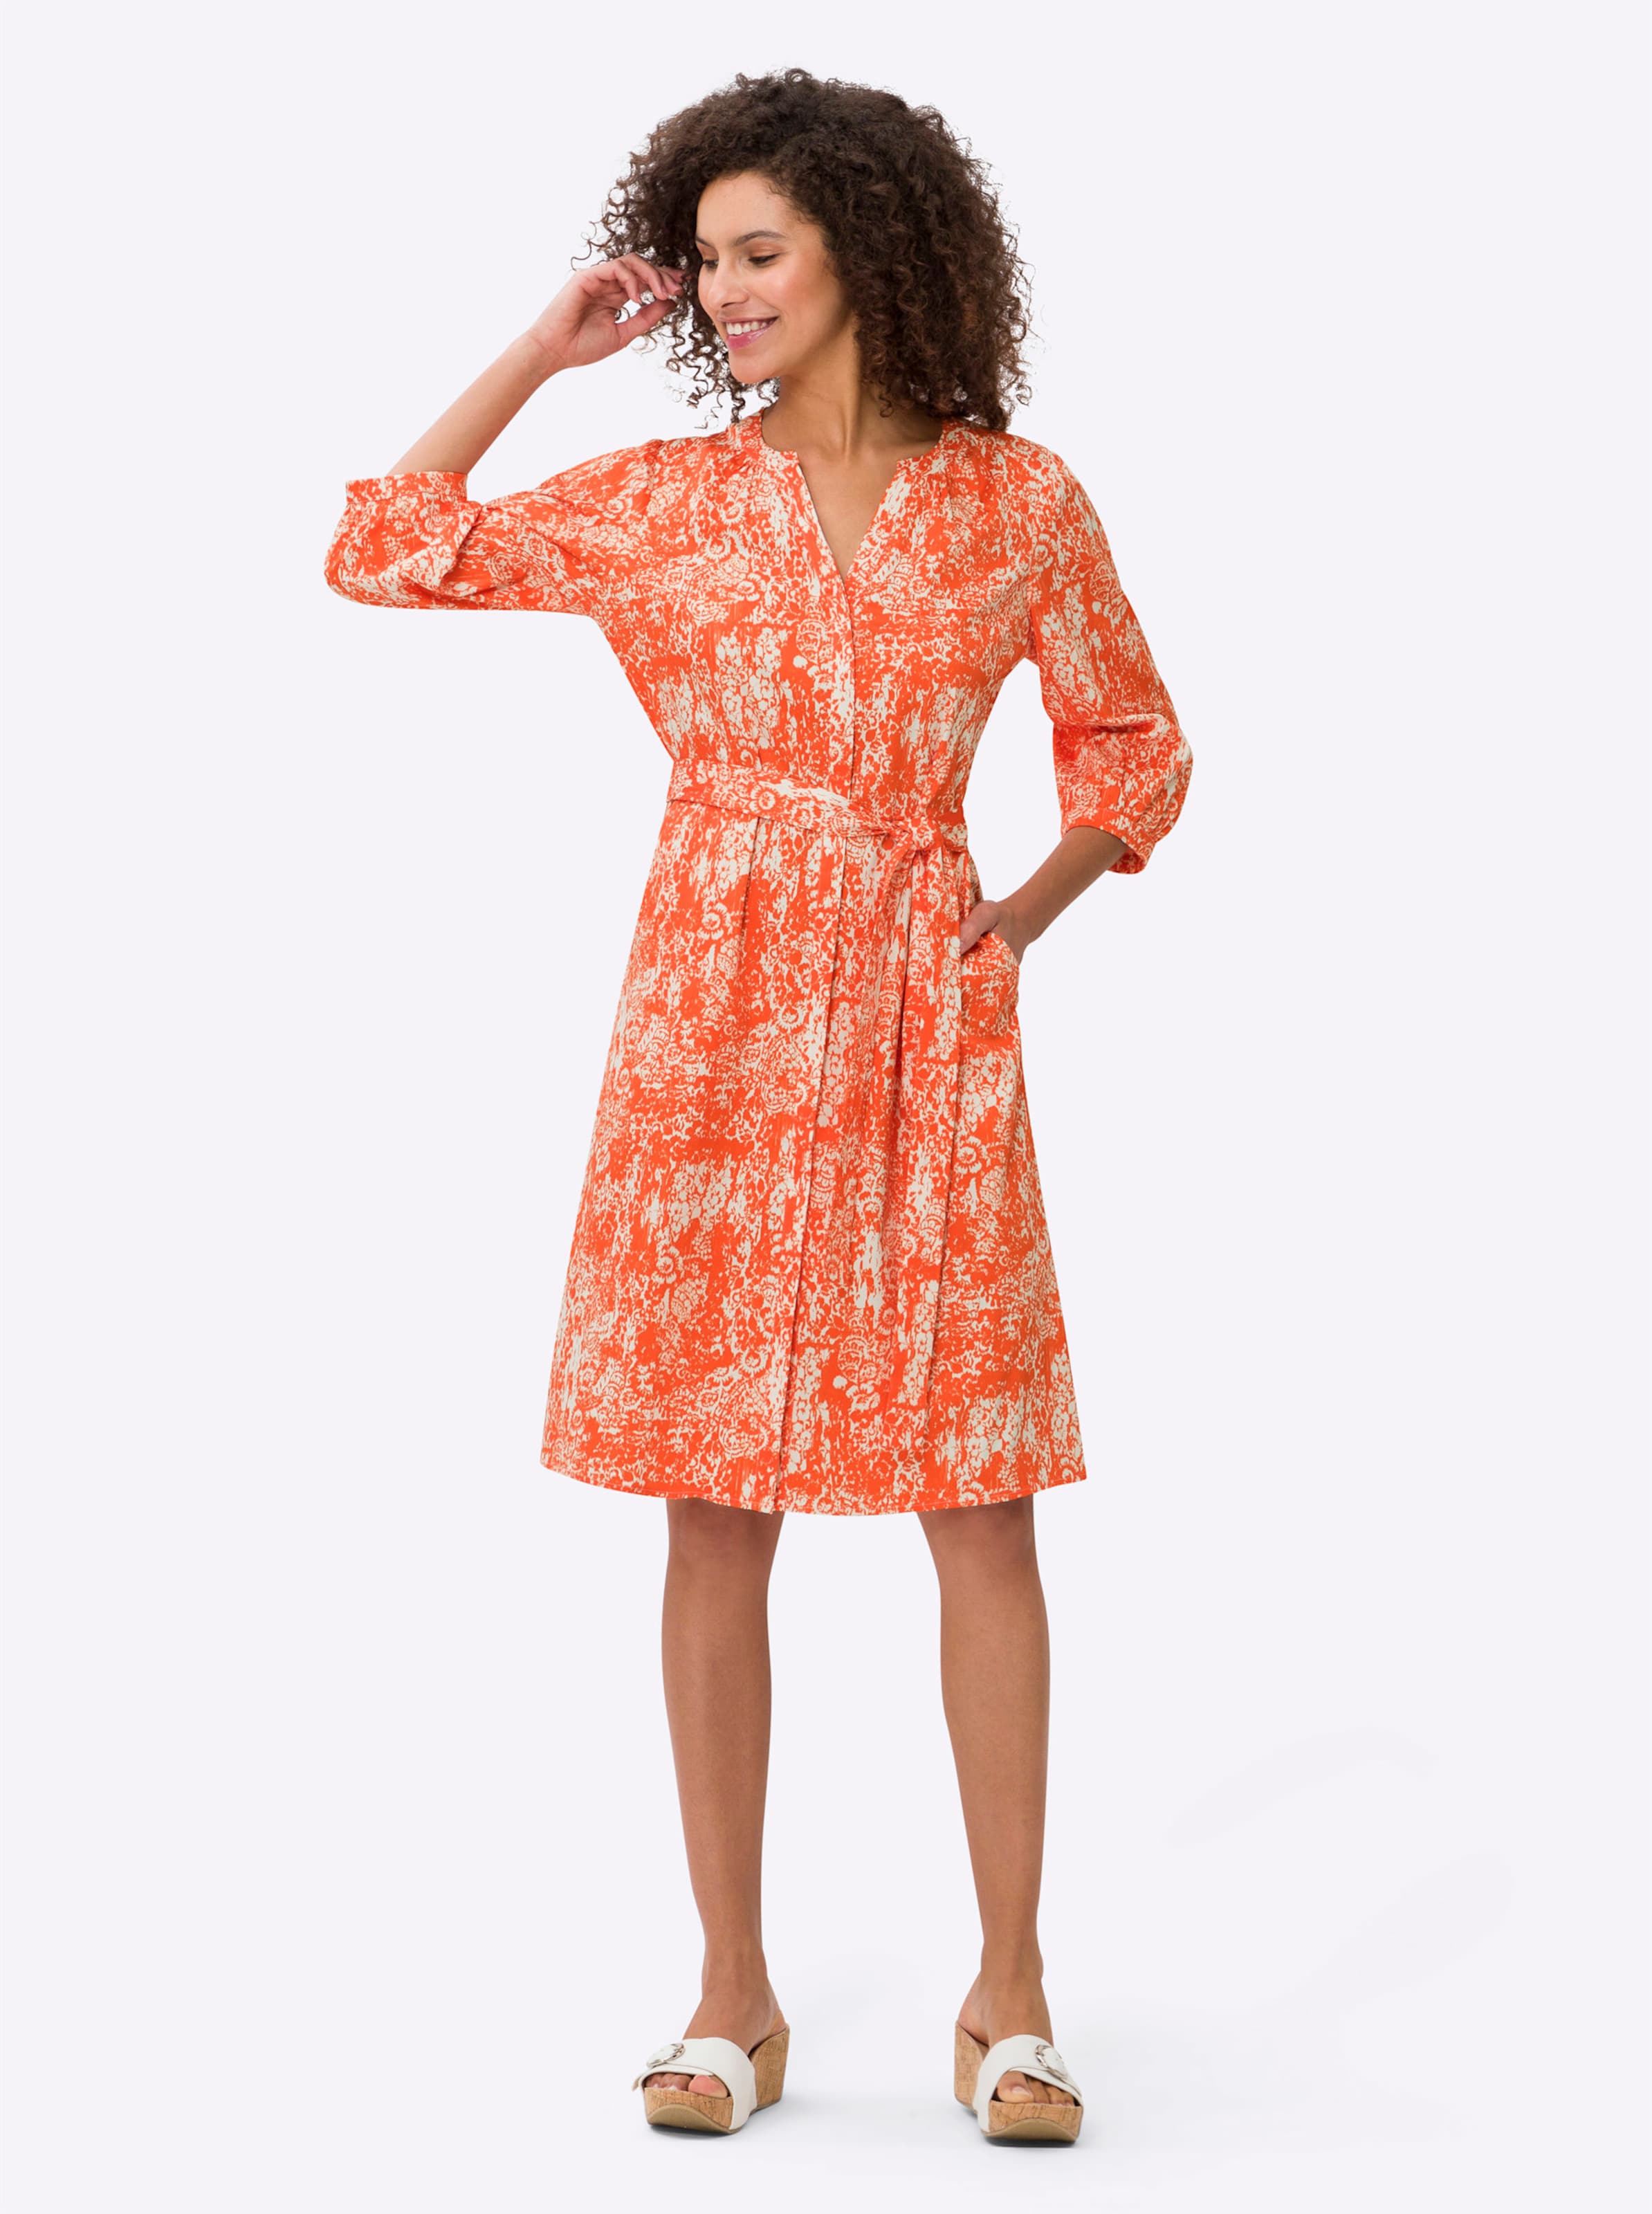 LS Run günstig Kaufen-Druck-Kleid in orange-ecru-bedruckt von heine. Druck-Kleid in orange-ecru-bedruckt von heine <![CDATA[Druck-Kleid Blickfang in angenehm leichter Baumwoll-Elasthan-Qualität mit modernem Print-Dessin. Rundhals-Ausschnitt mit offenem V und durchgehender ver